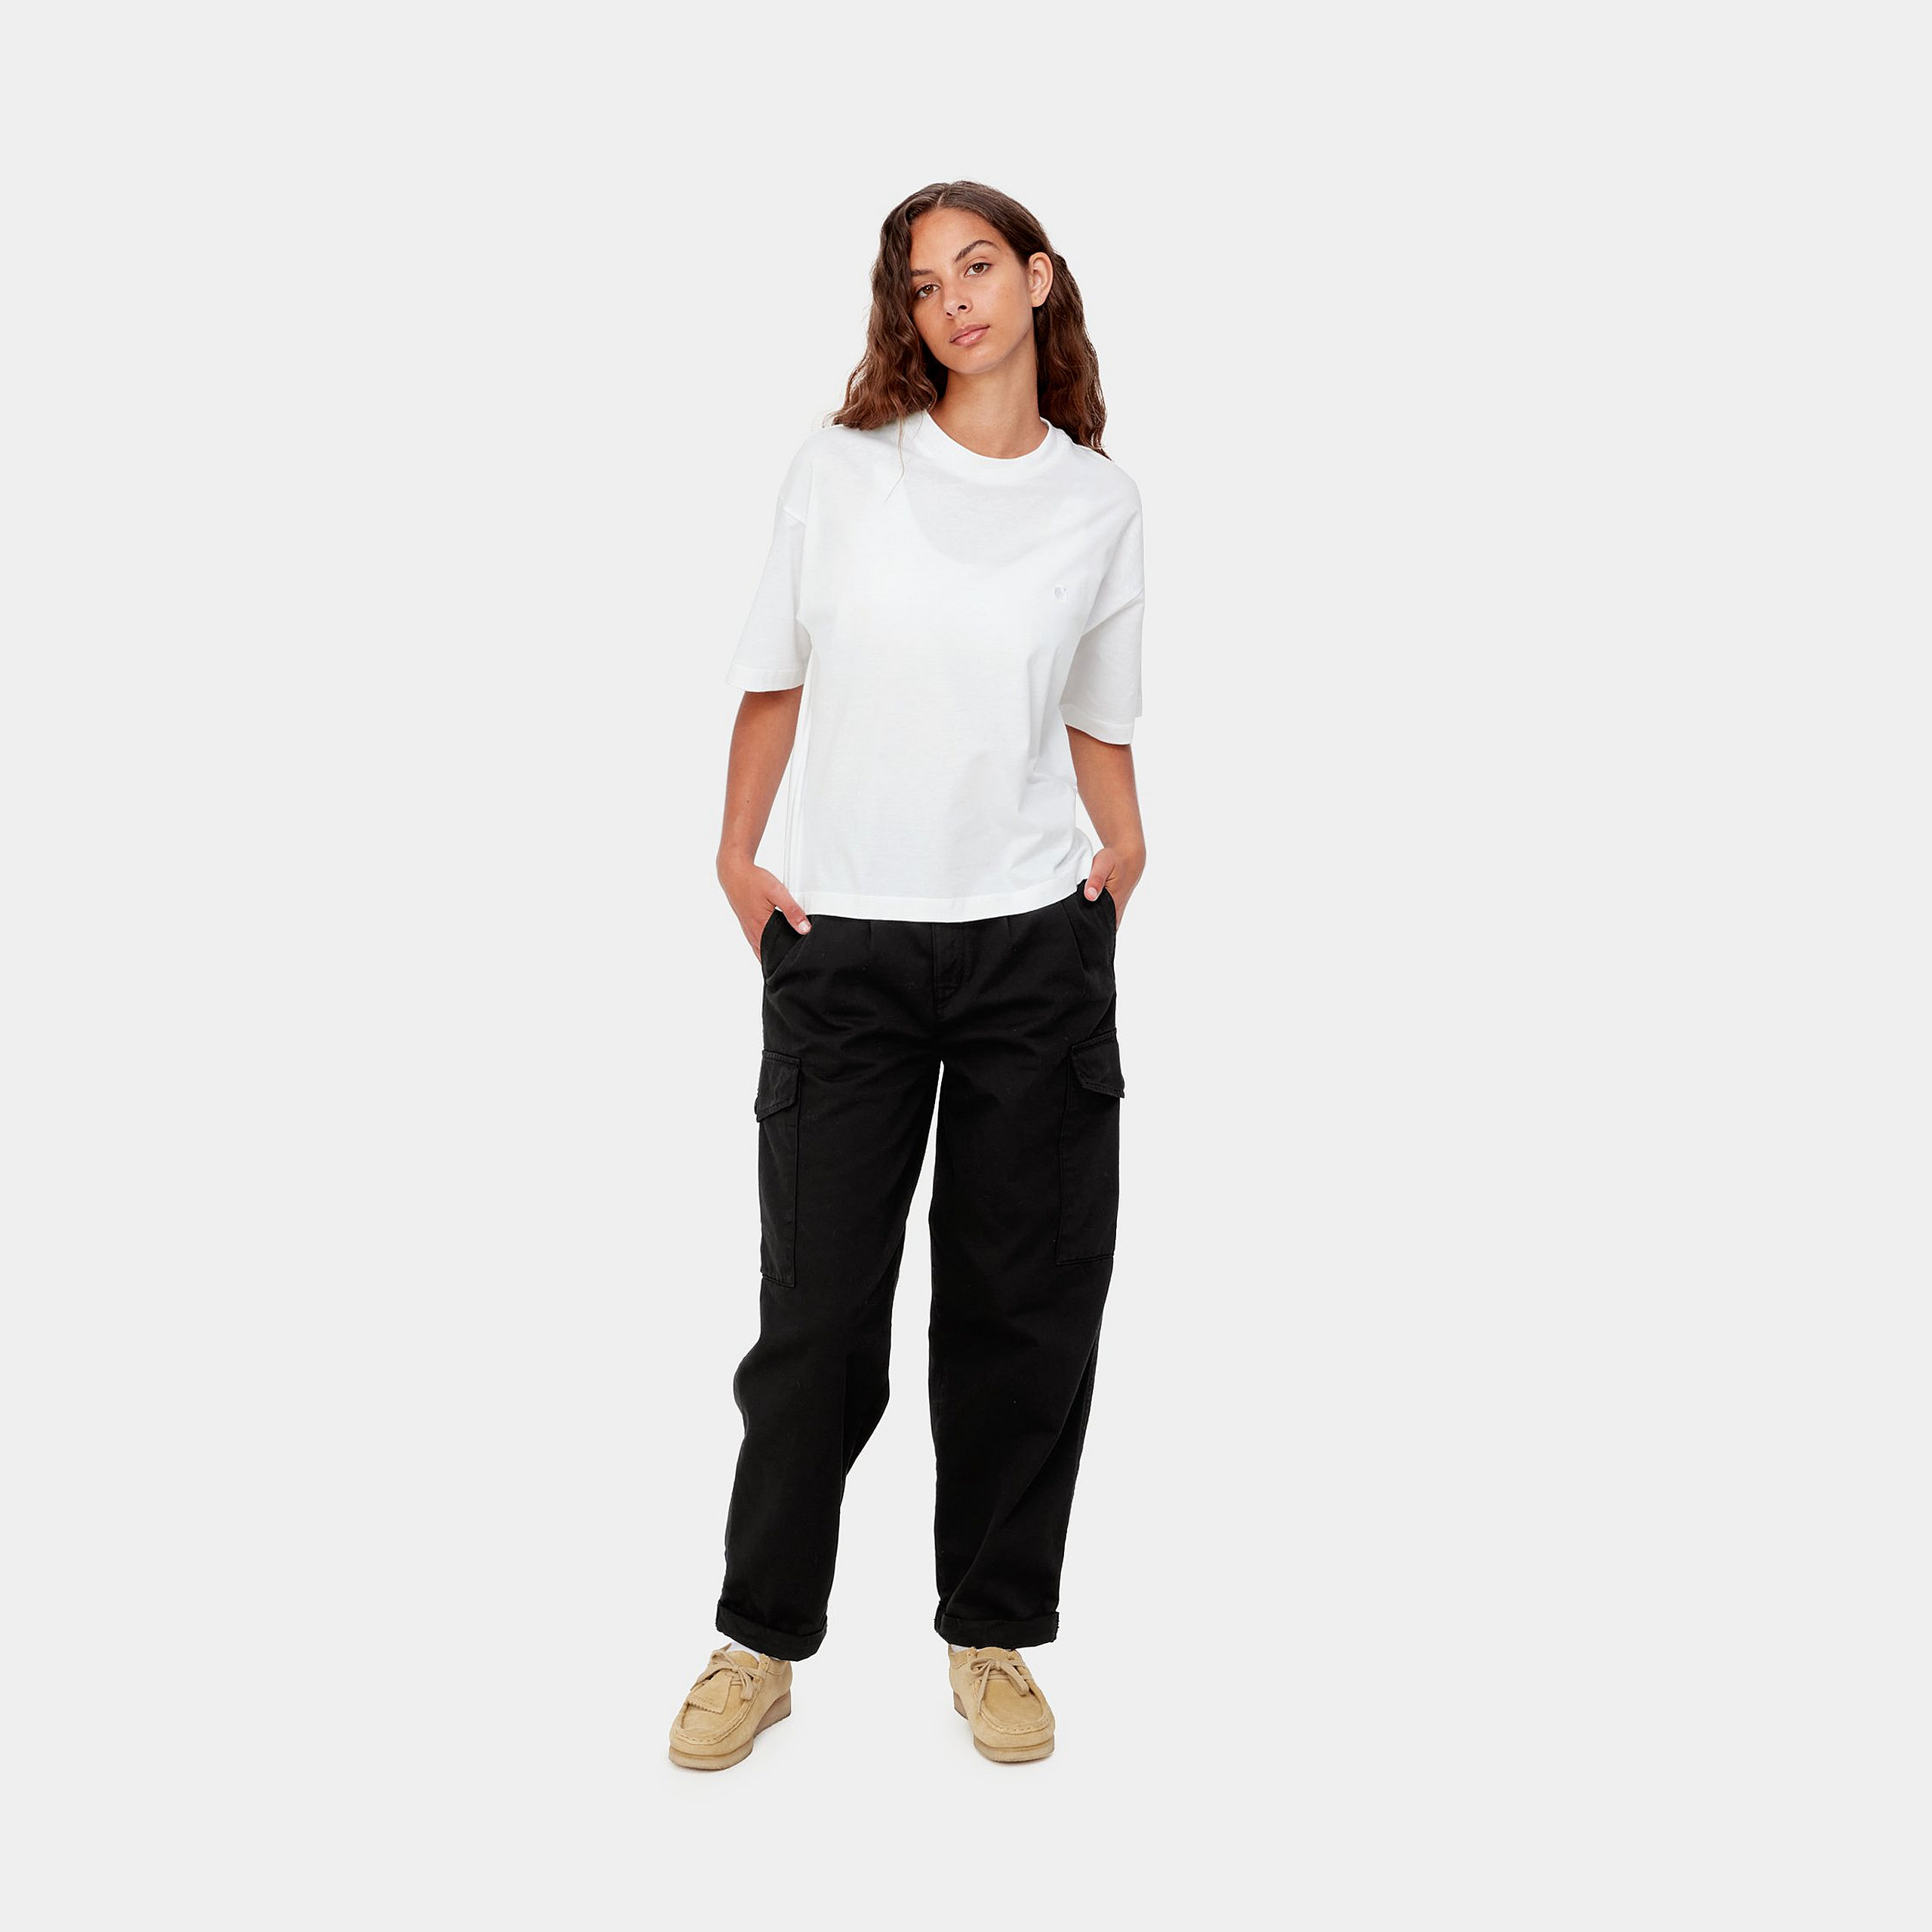 Carhartt WIP - W' S/S Chester T-Shirt - White